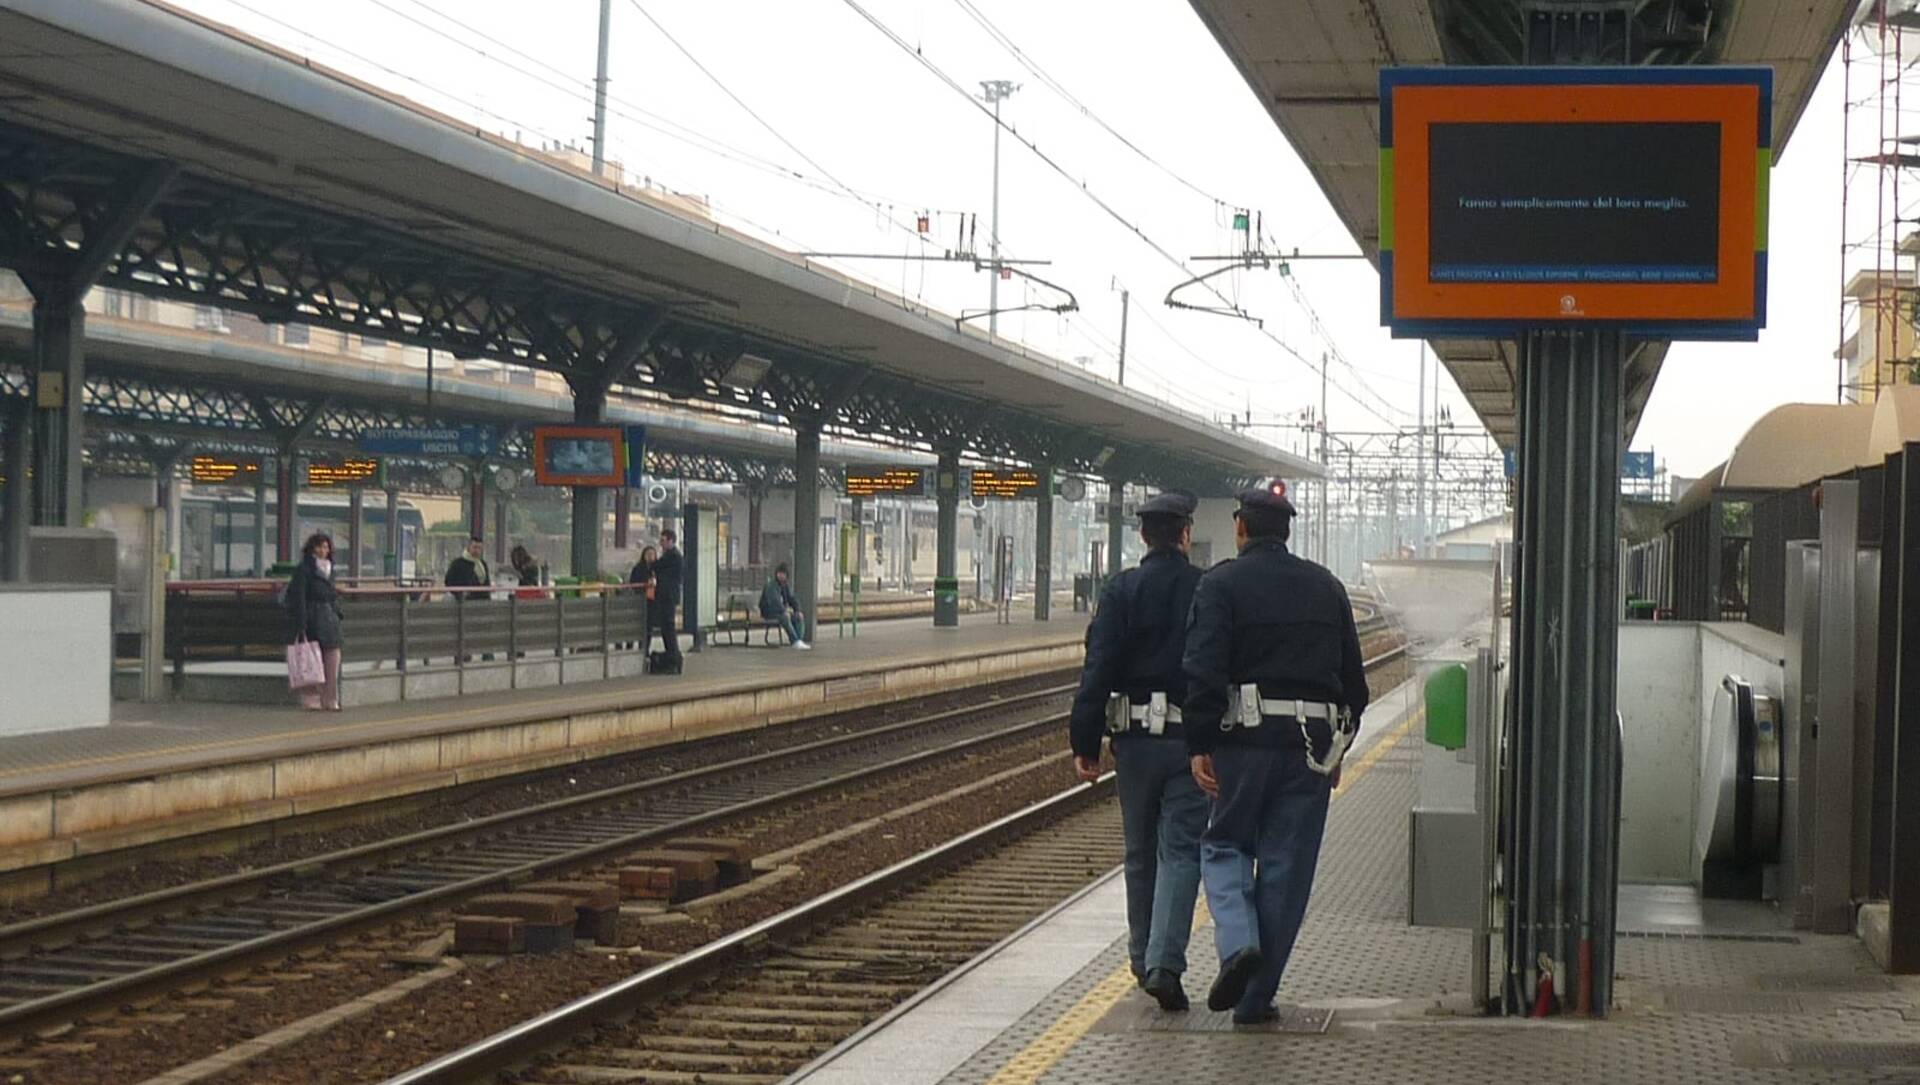 Violenza sul treno, l’assessore regionale pensa alle contromisure: “Nuovi vagoni con telecamere”